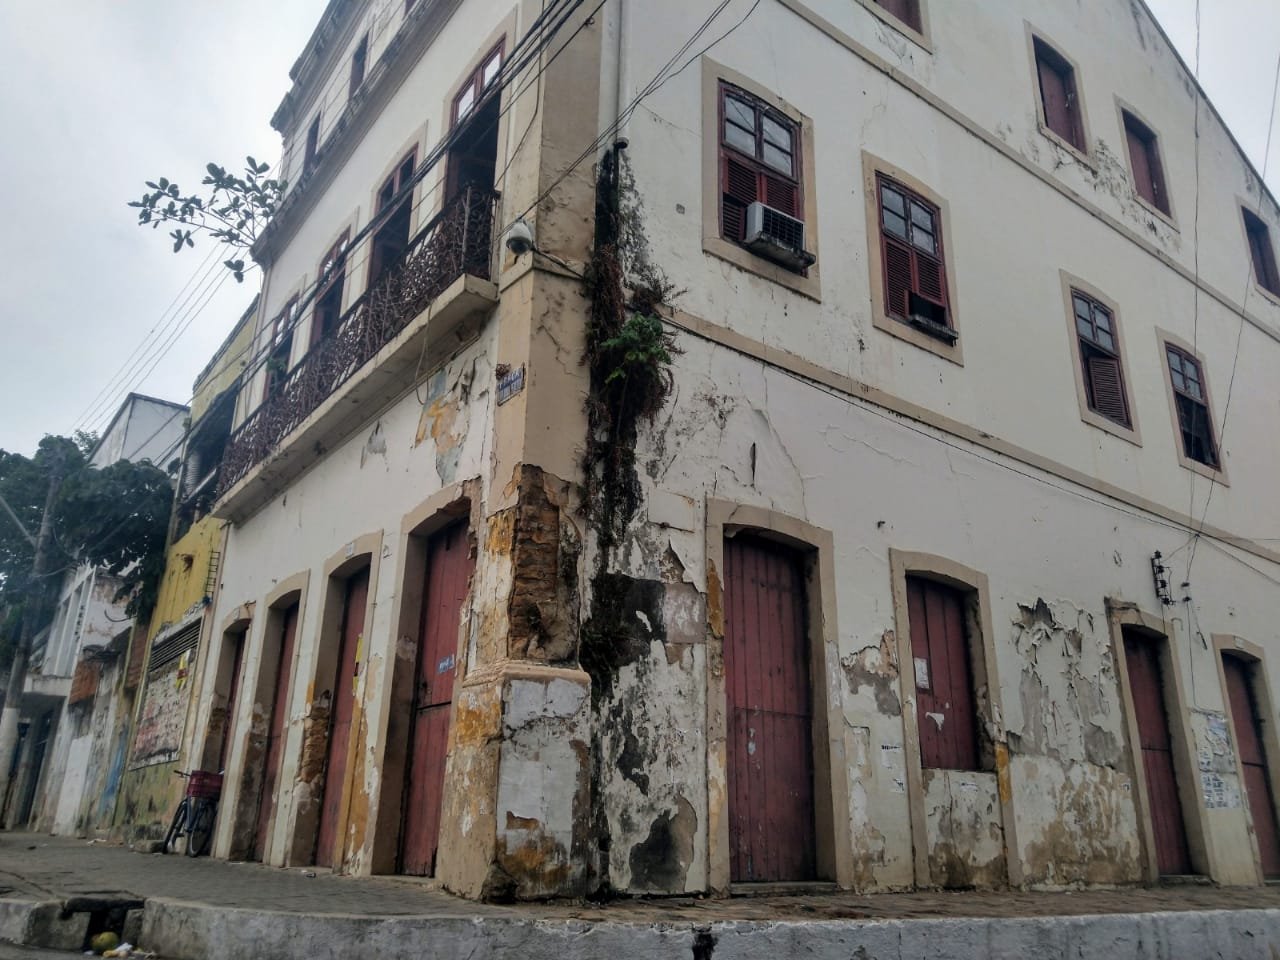 WhatsApp Image 2020 01 24 at 17.36.16 2 - Ruínas: os prédios que o poder público abandonou